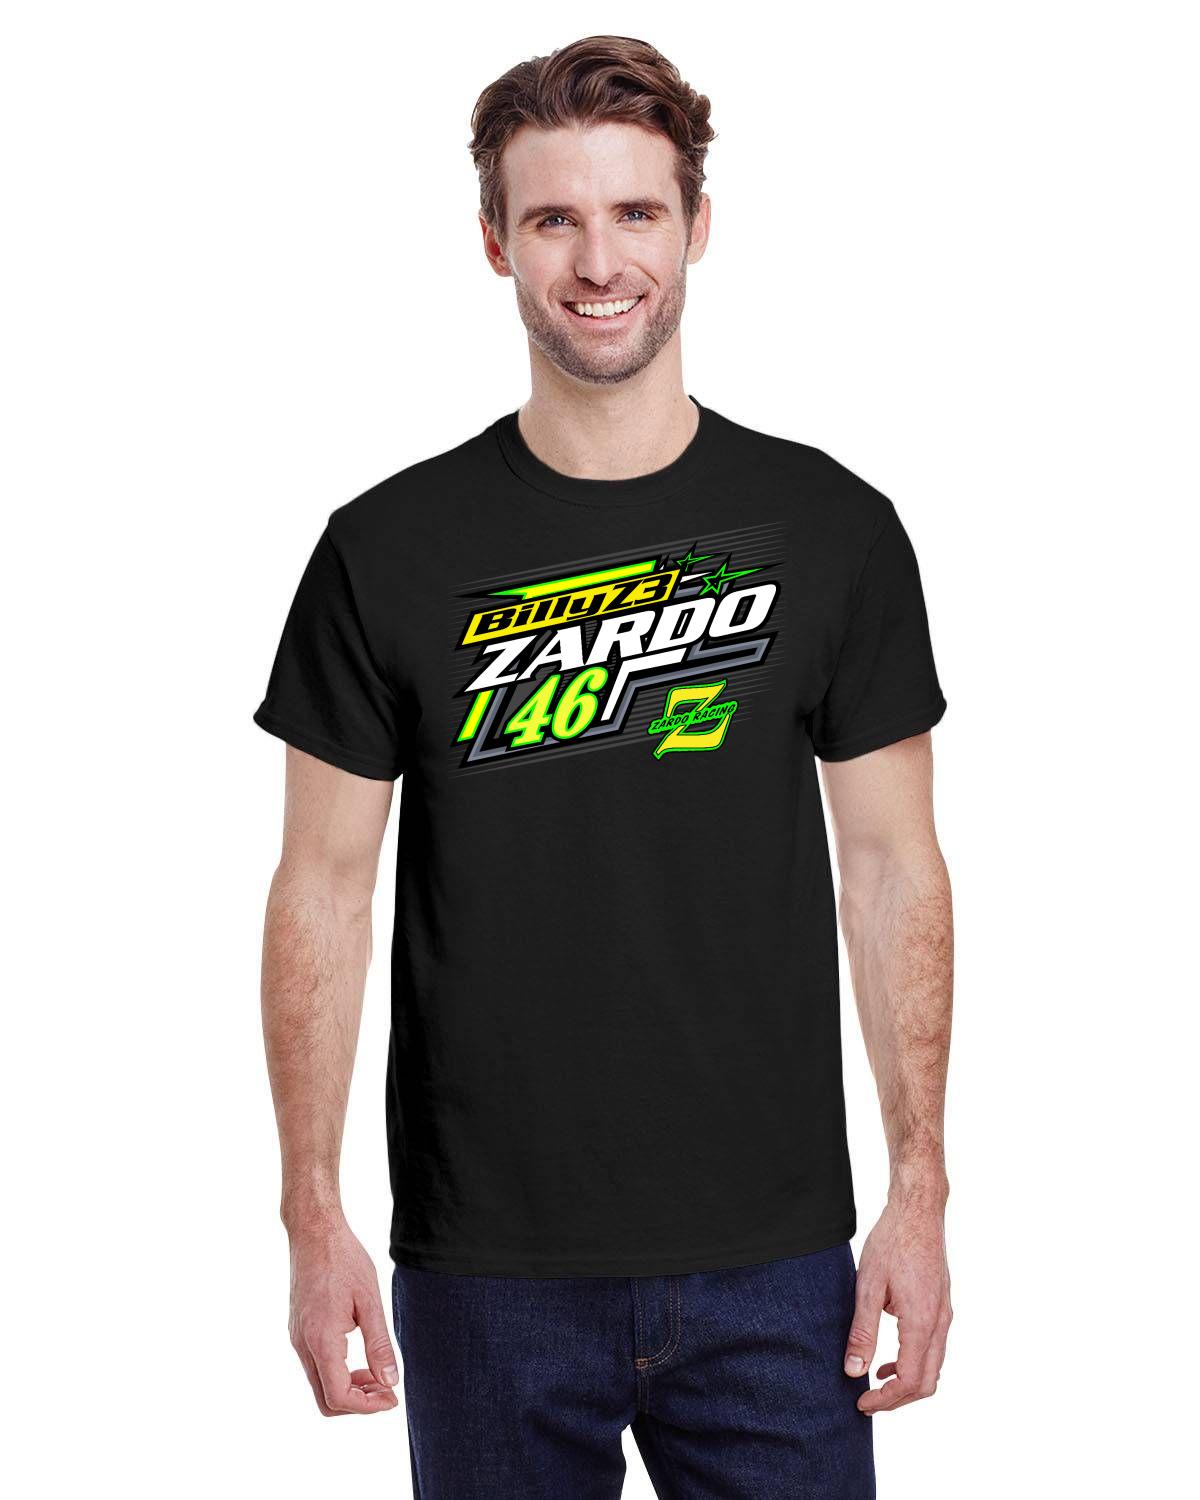 Billy Zardo Z3 PLM Men's Tshirt